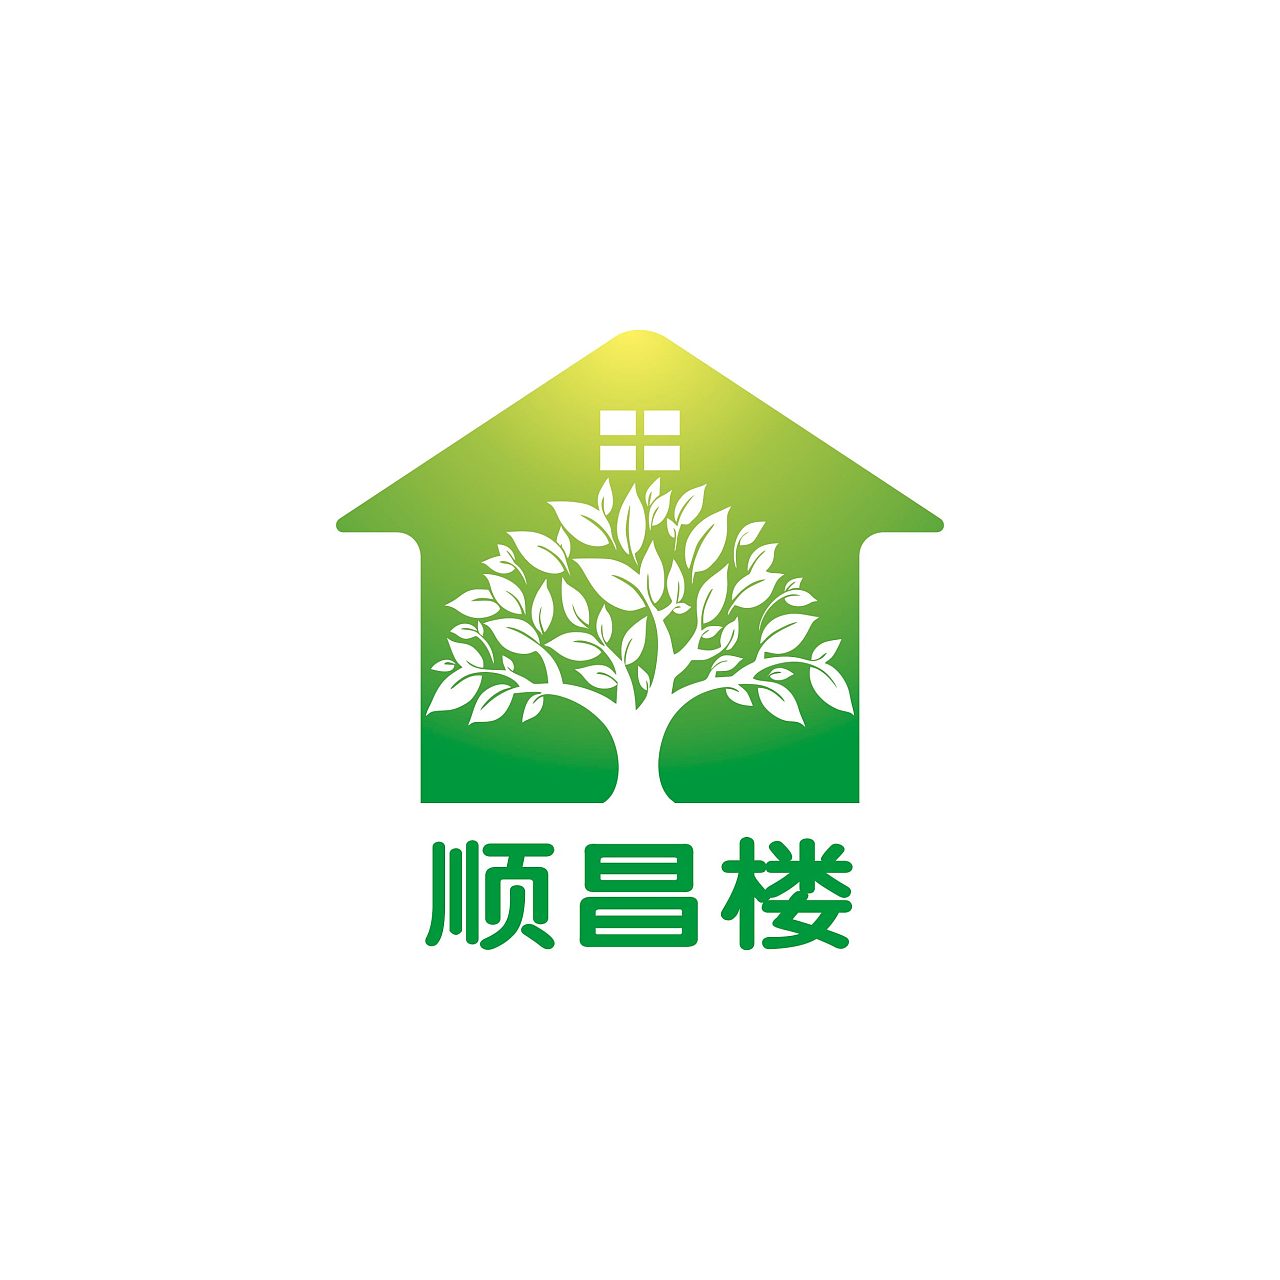 顺昌楼logo设计杭州|平面设计师745876893登录 注册